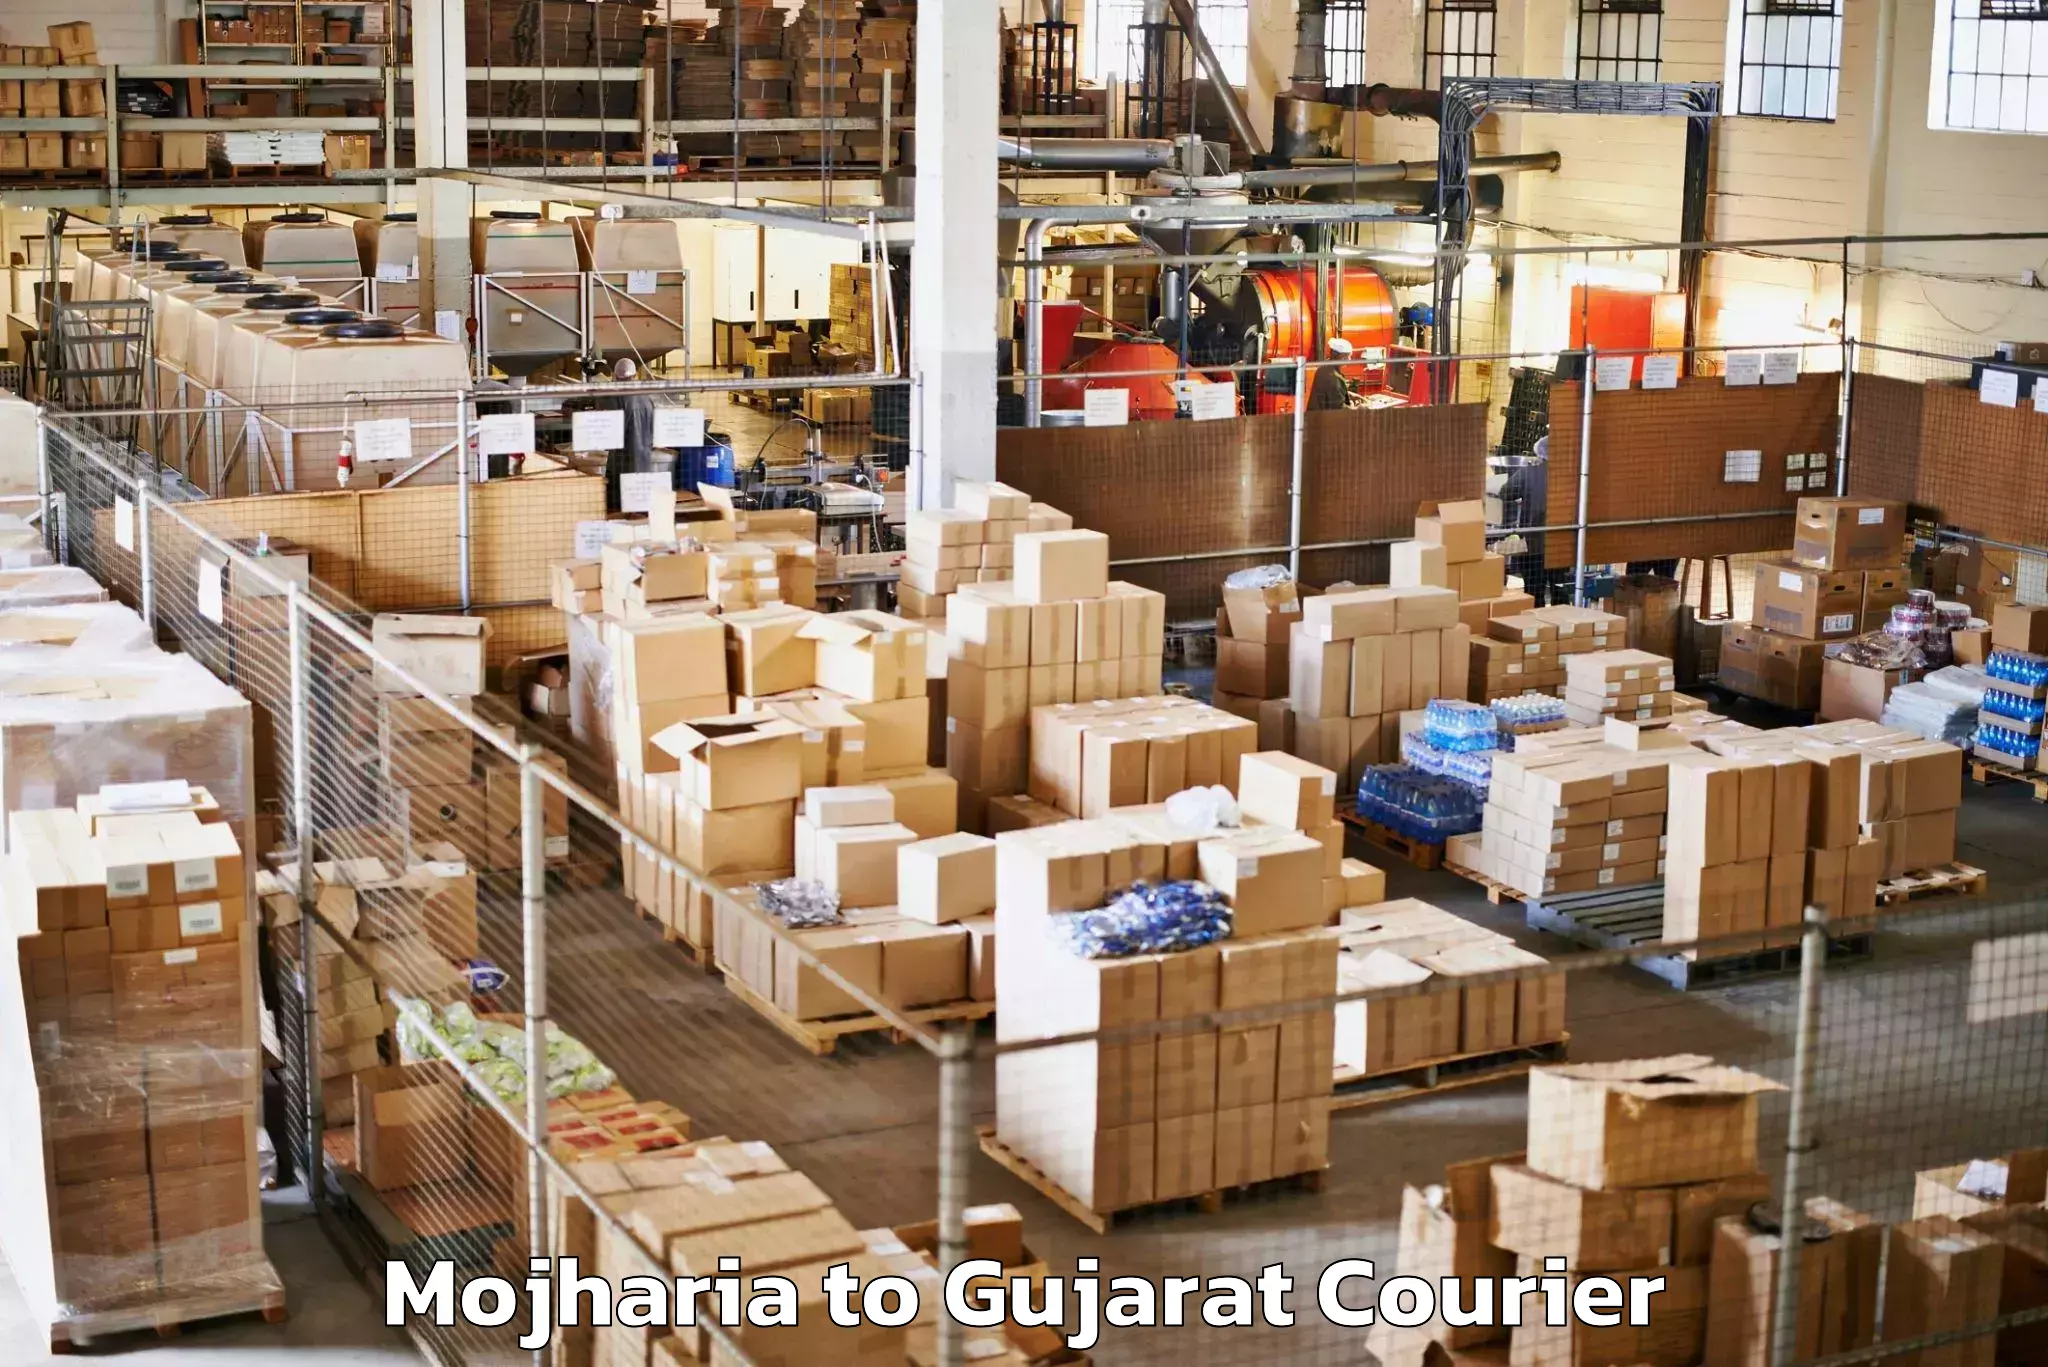 Door-to-door baggage service Mojharia to Gujarat